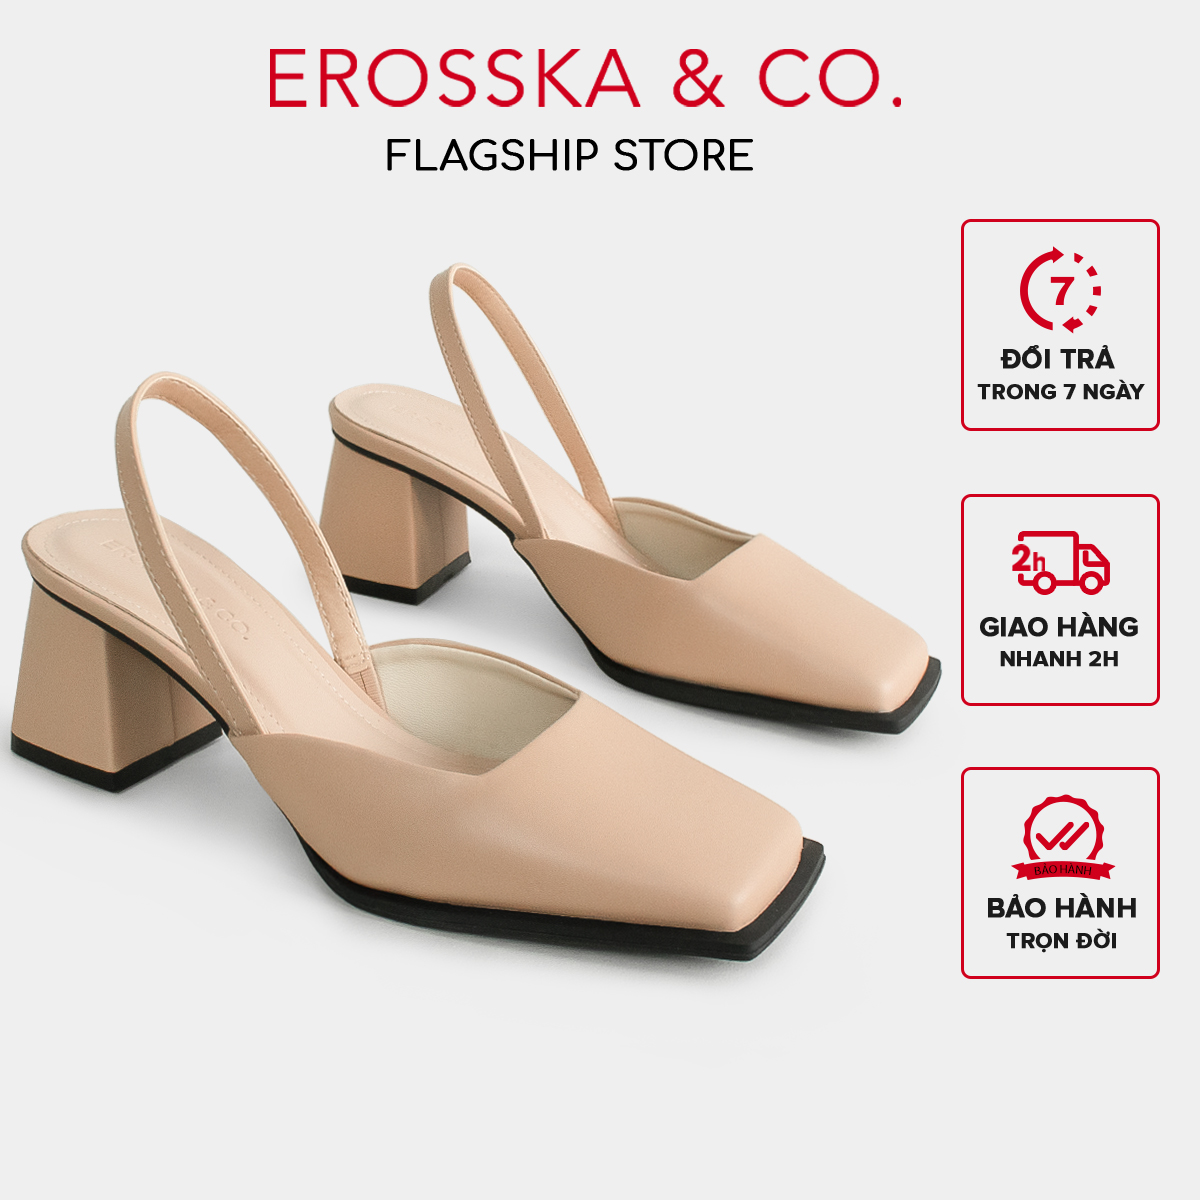 Erosska - Giày cao gót mũi vuông phối dây quai mảnh trẻ trung - EL026